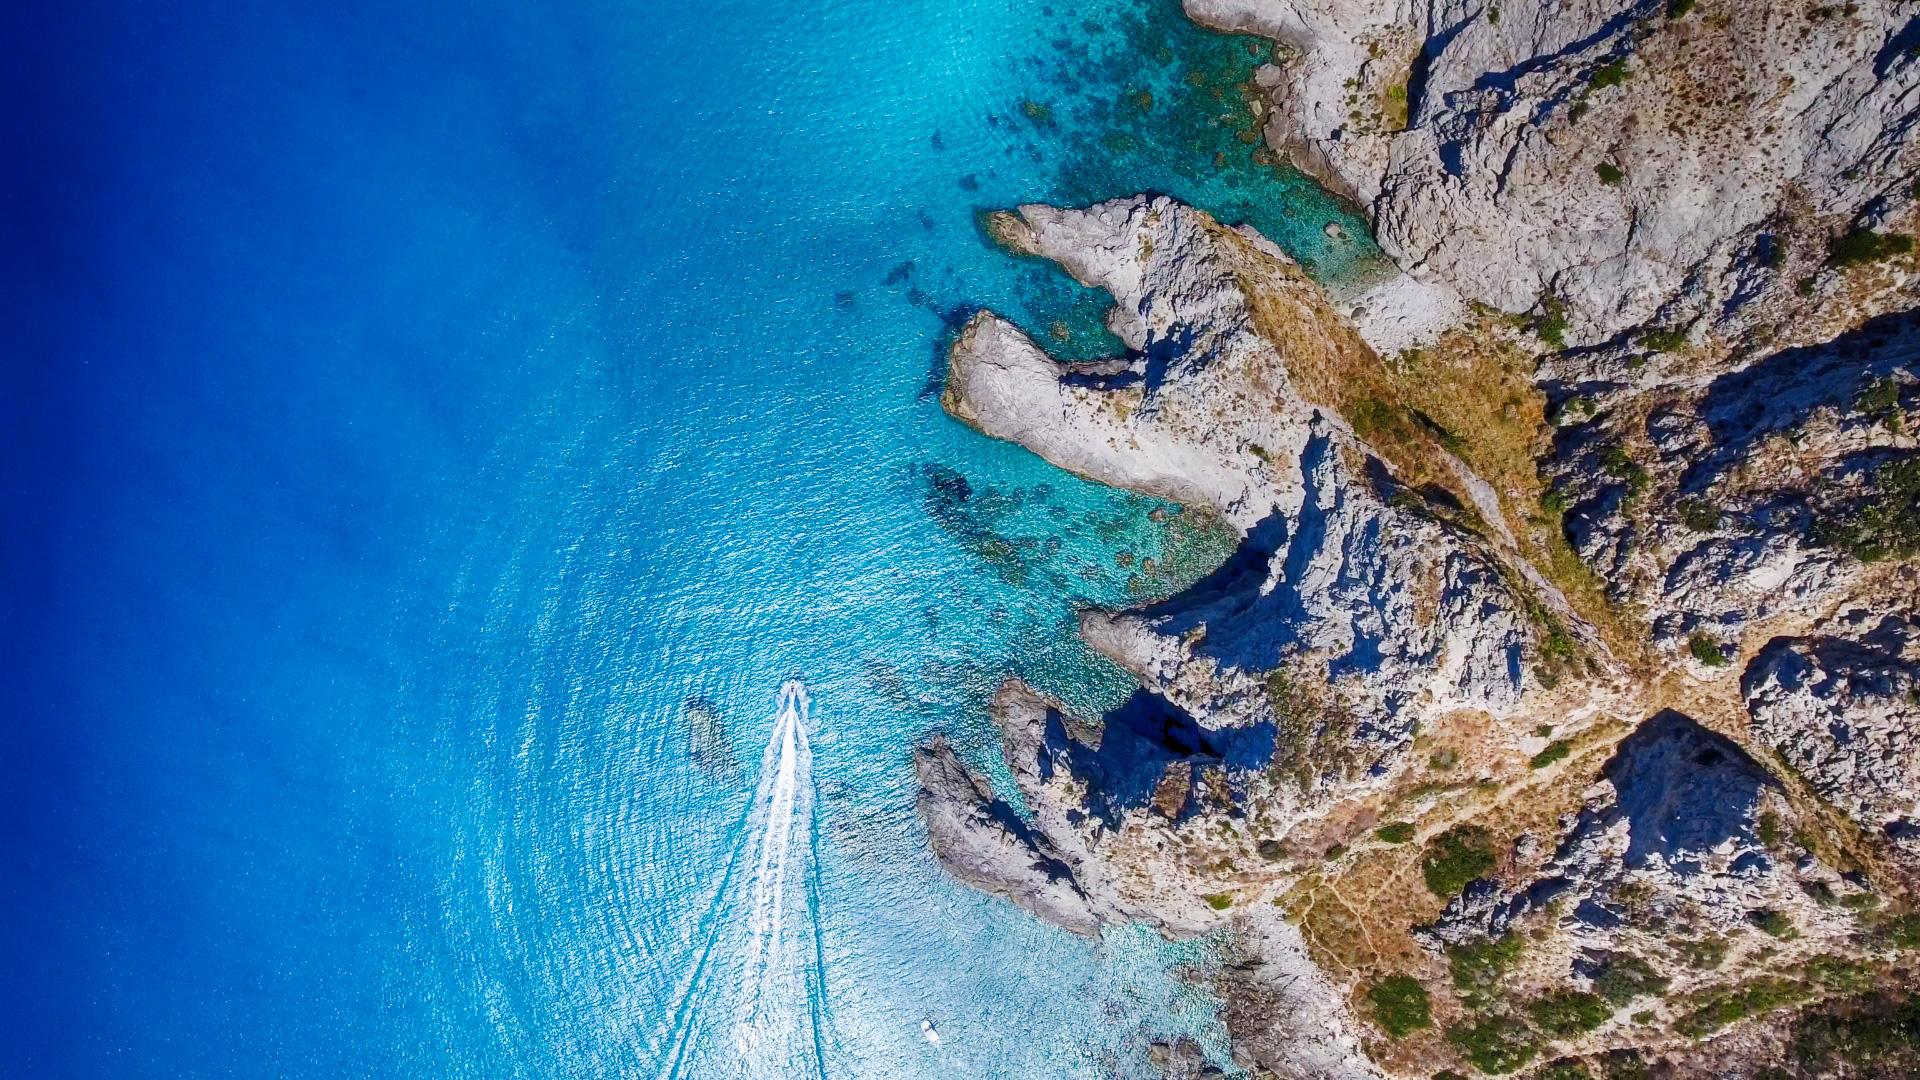 Vista aerea di una barca che naviga in acque cristalline vicino a scogliere rocciose.